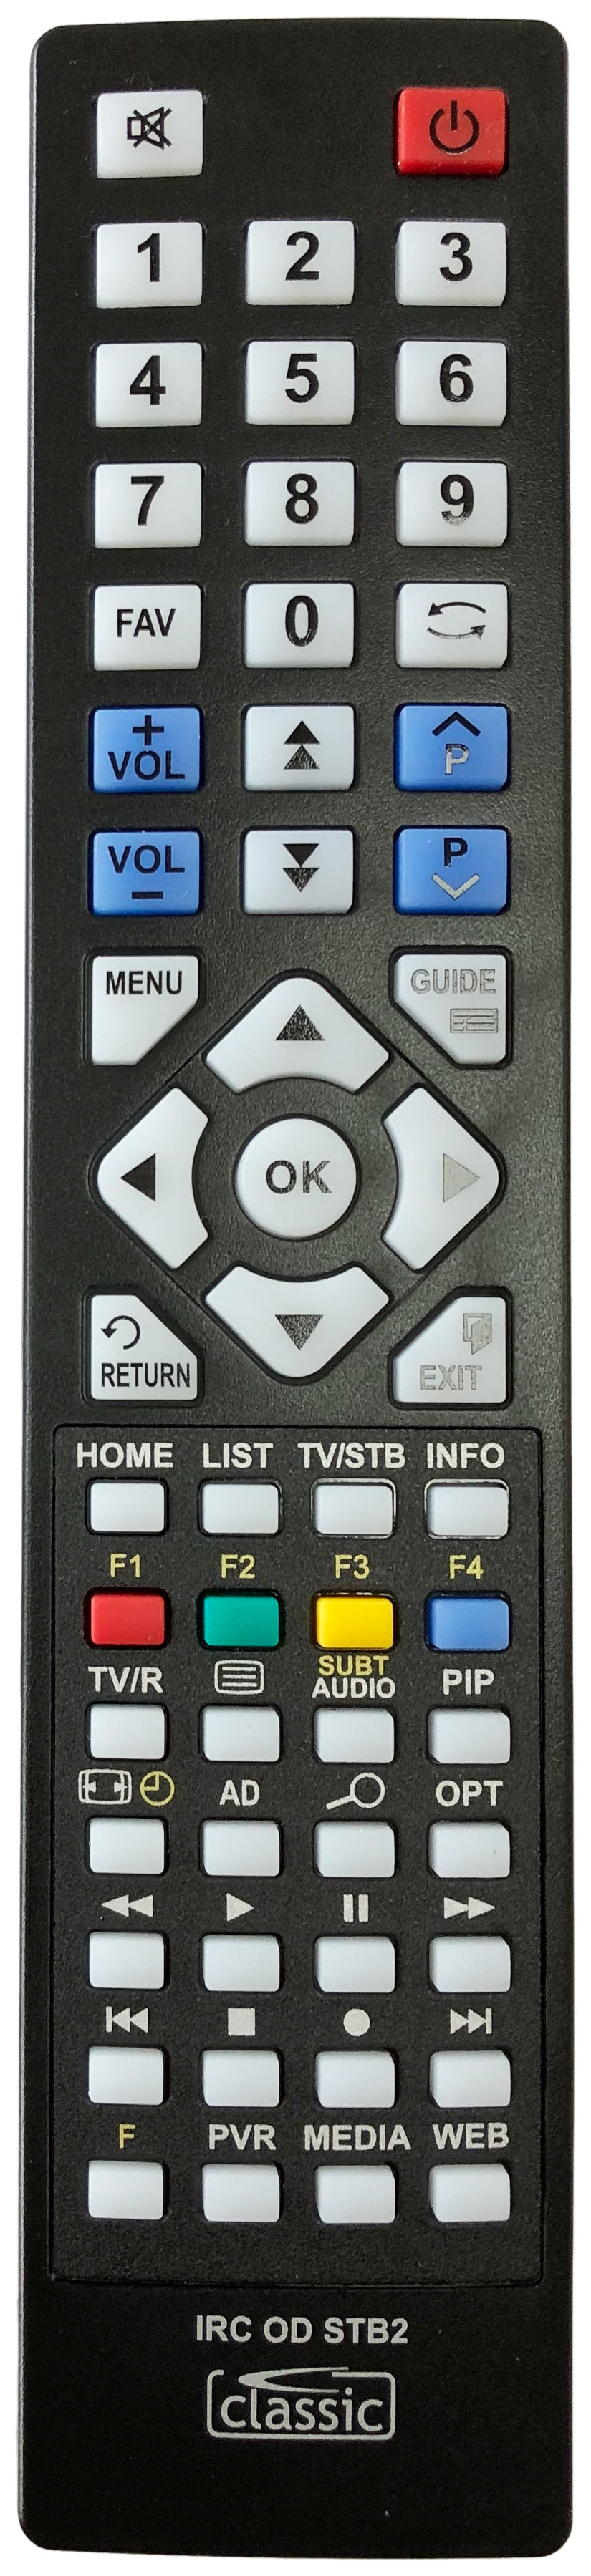 HUMAX HDR-1000S Remote Control Alternative